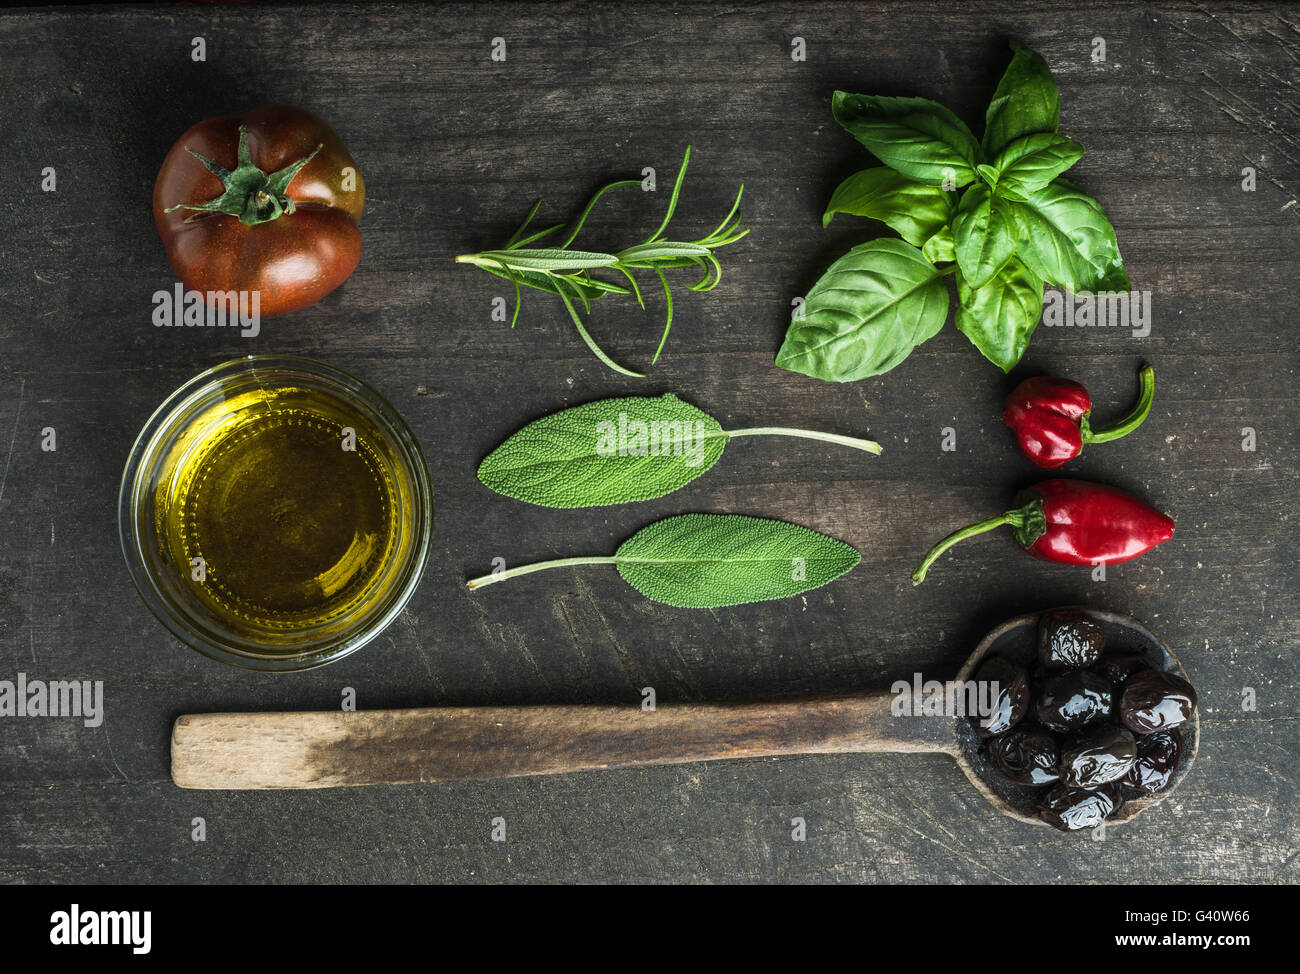 Gemüse und Kräuter auf dunklen rustikalen hölzernen Hintergrund. Griechische schwarze Oliven, frische grüne Salbei, Rosmarin, Basilikum-Kräuter, Öl, Tomaten, Stockfoto